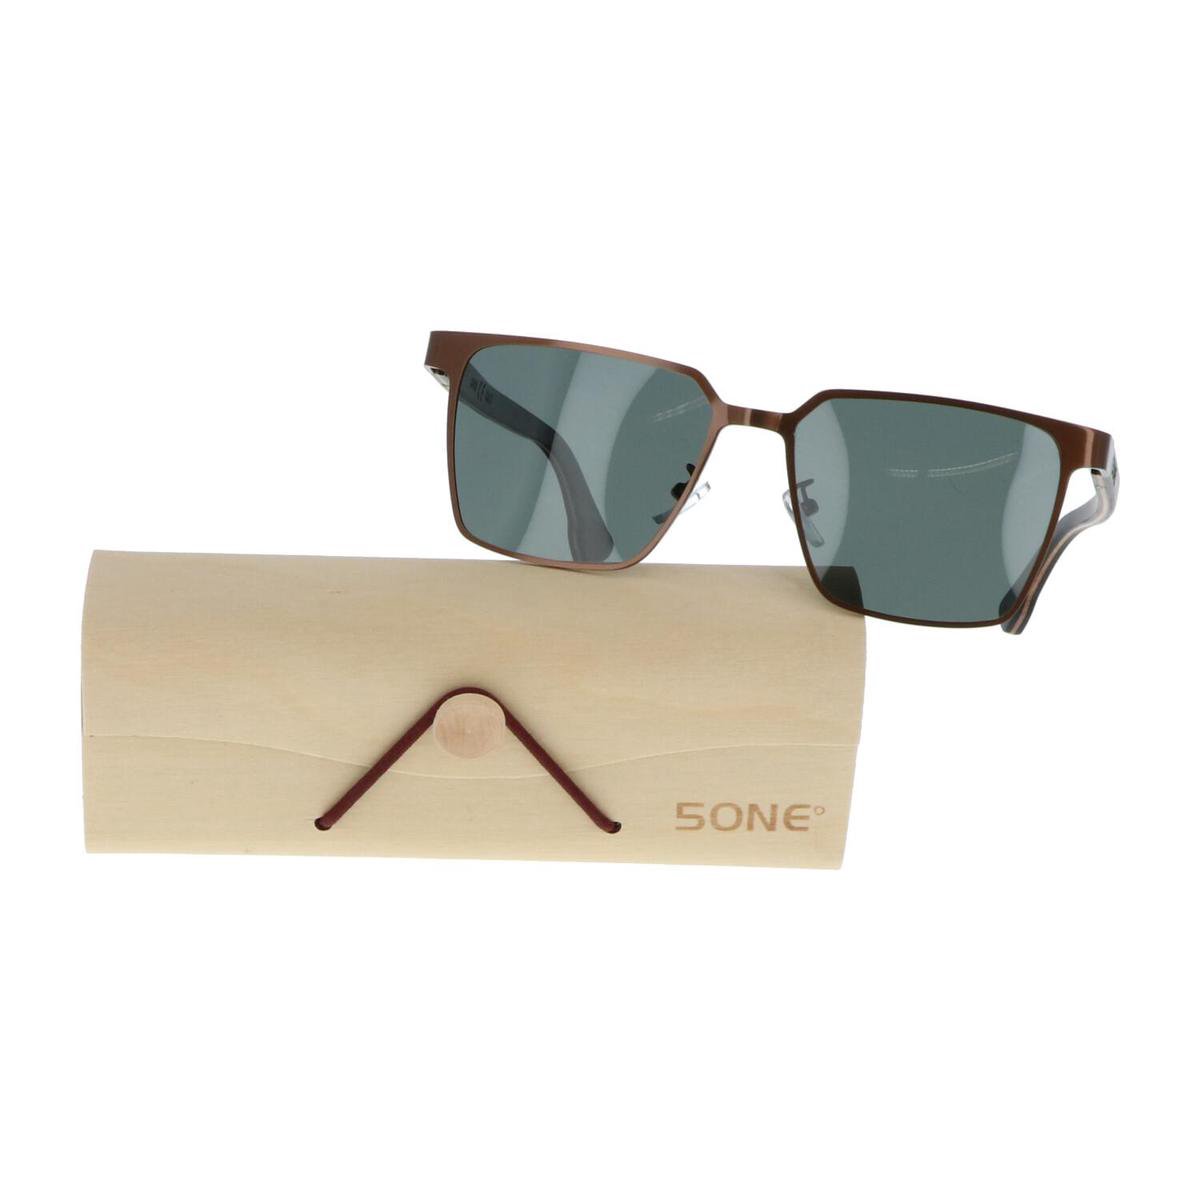 5one® Napoli Square Green - Zonnebril met houten poten - G15 lens